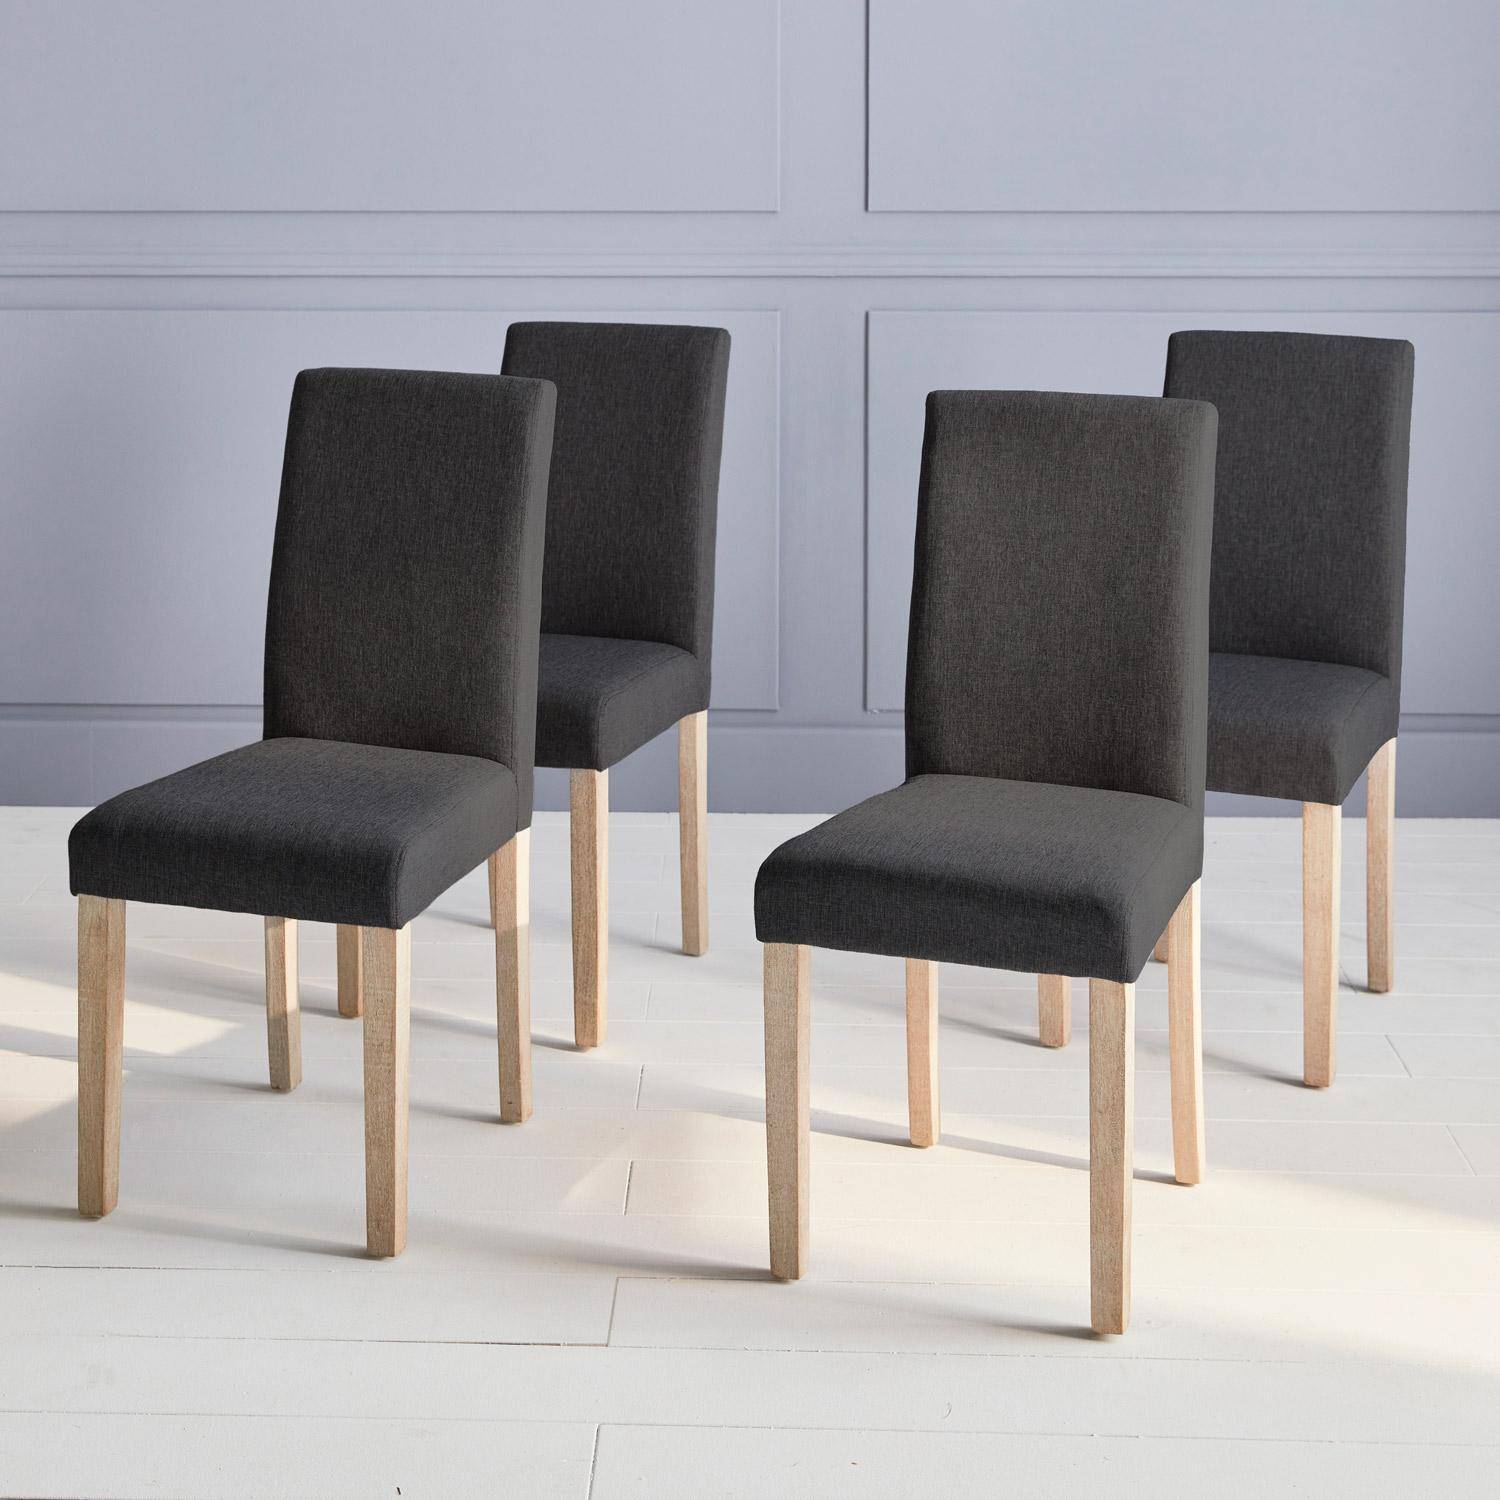 Conjunto de 4 sillas - Rita - sillas de tela, patas madera lacada  Photo1